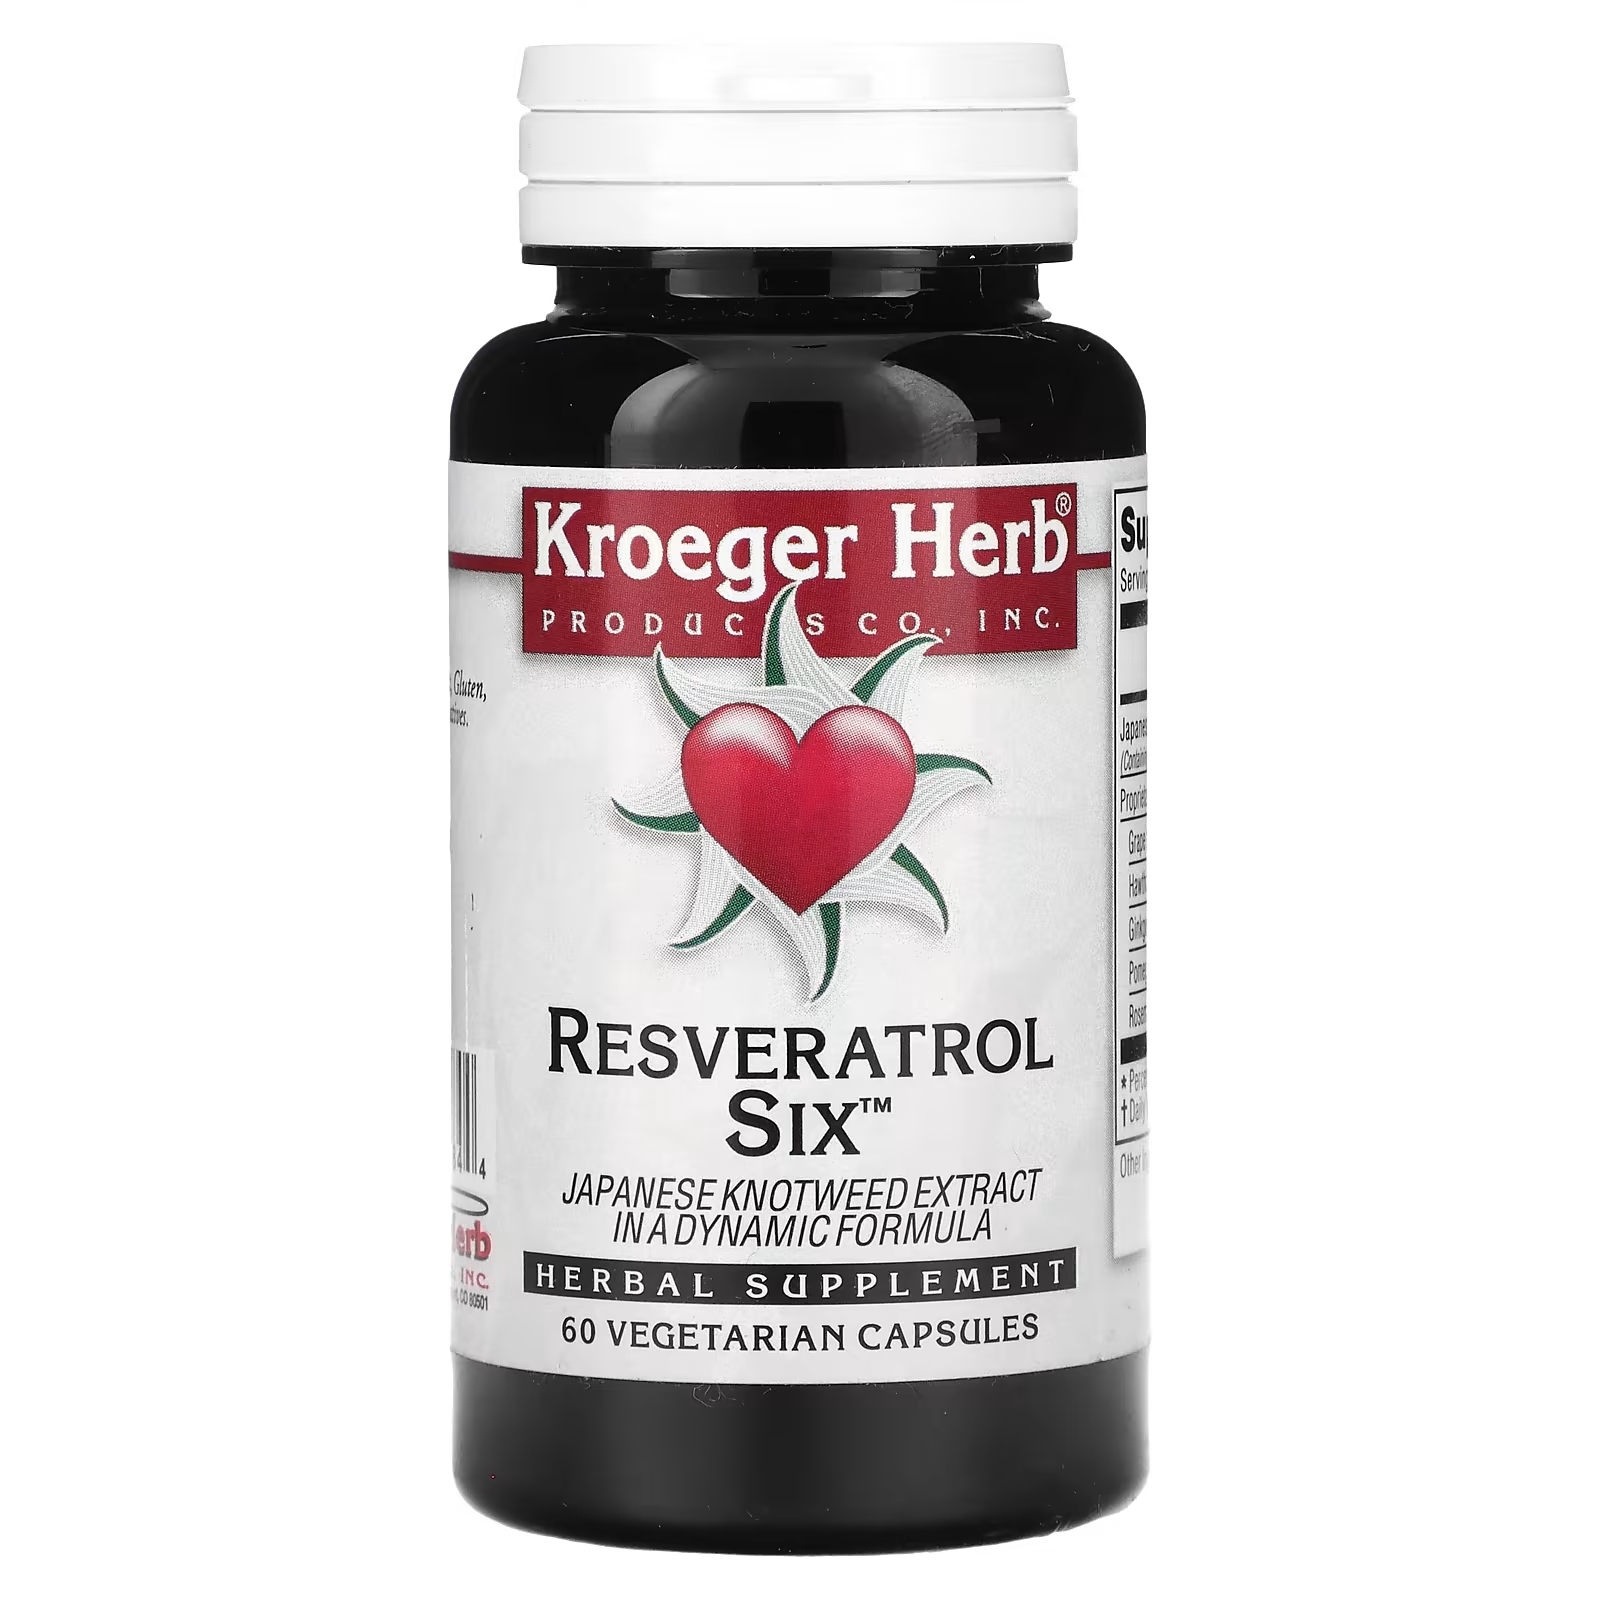 Растительная добавка Kroeger Herb Co ресвератрол шесть, 60 капсул